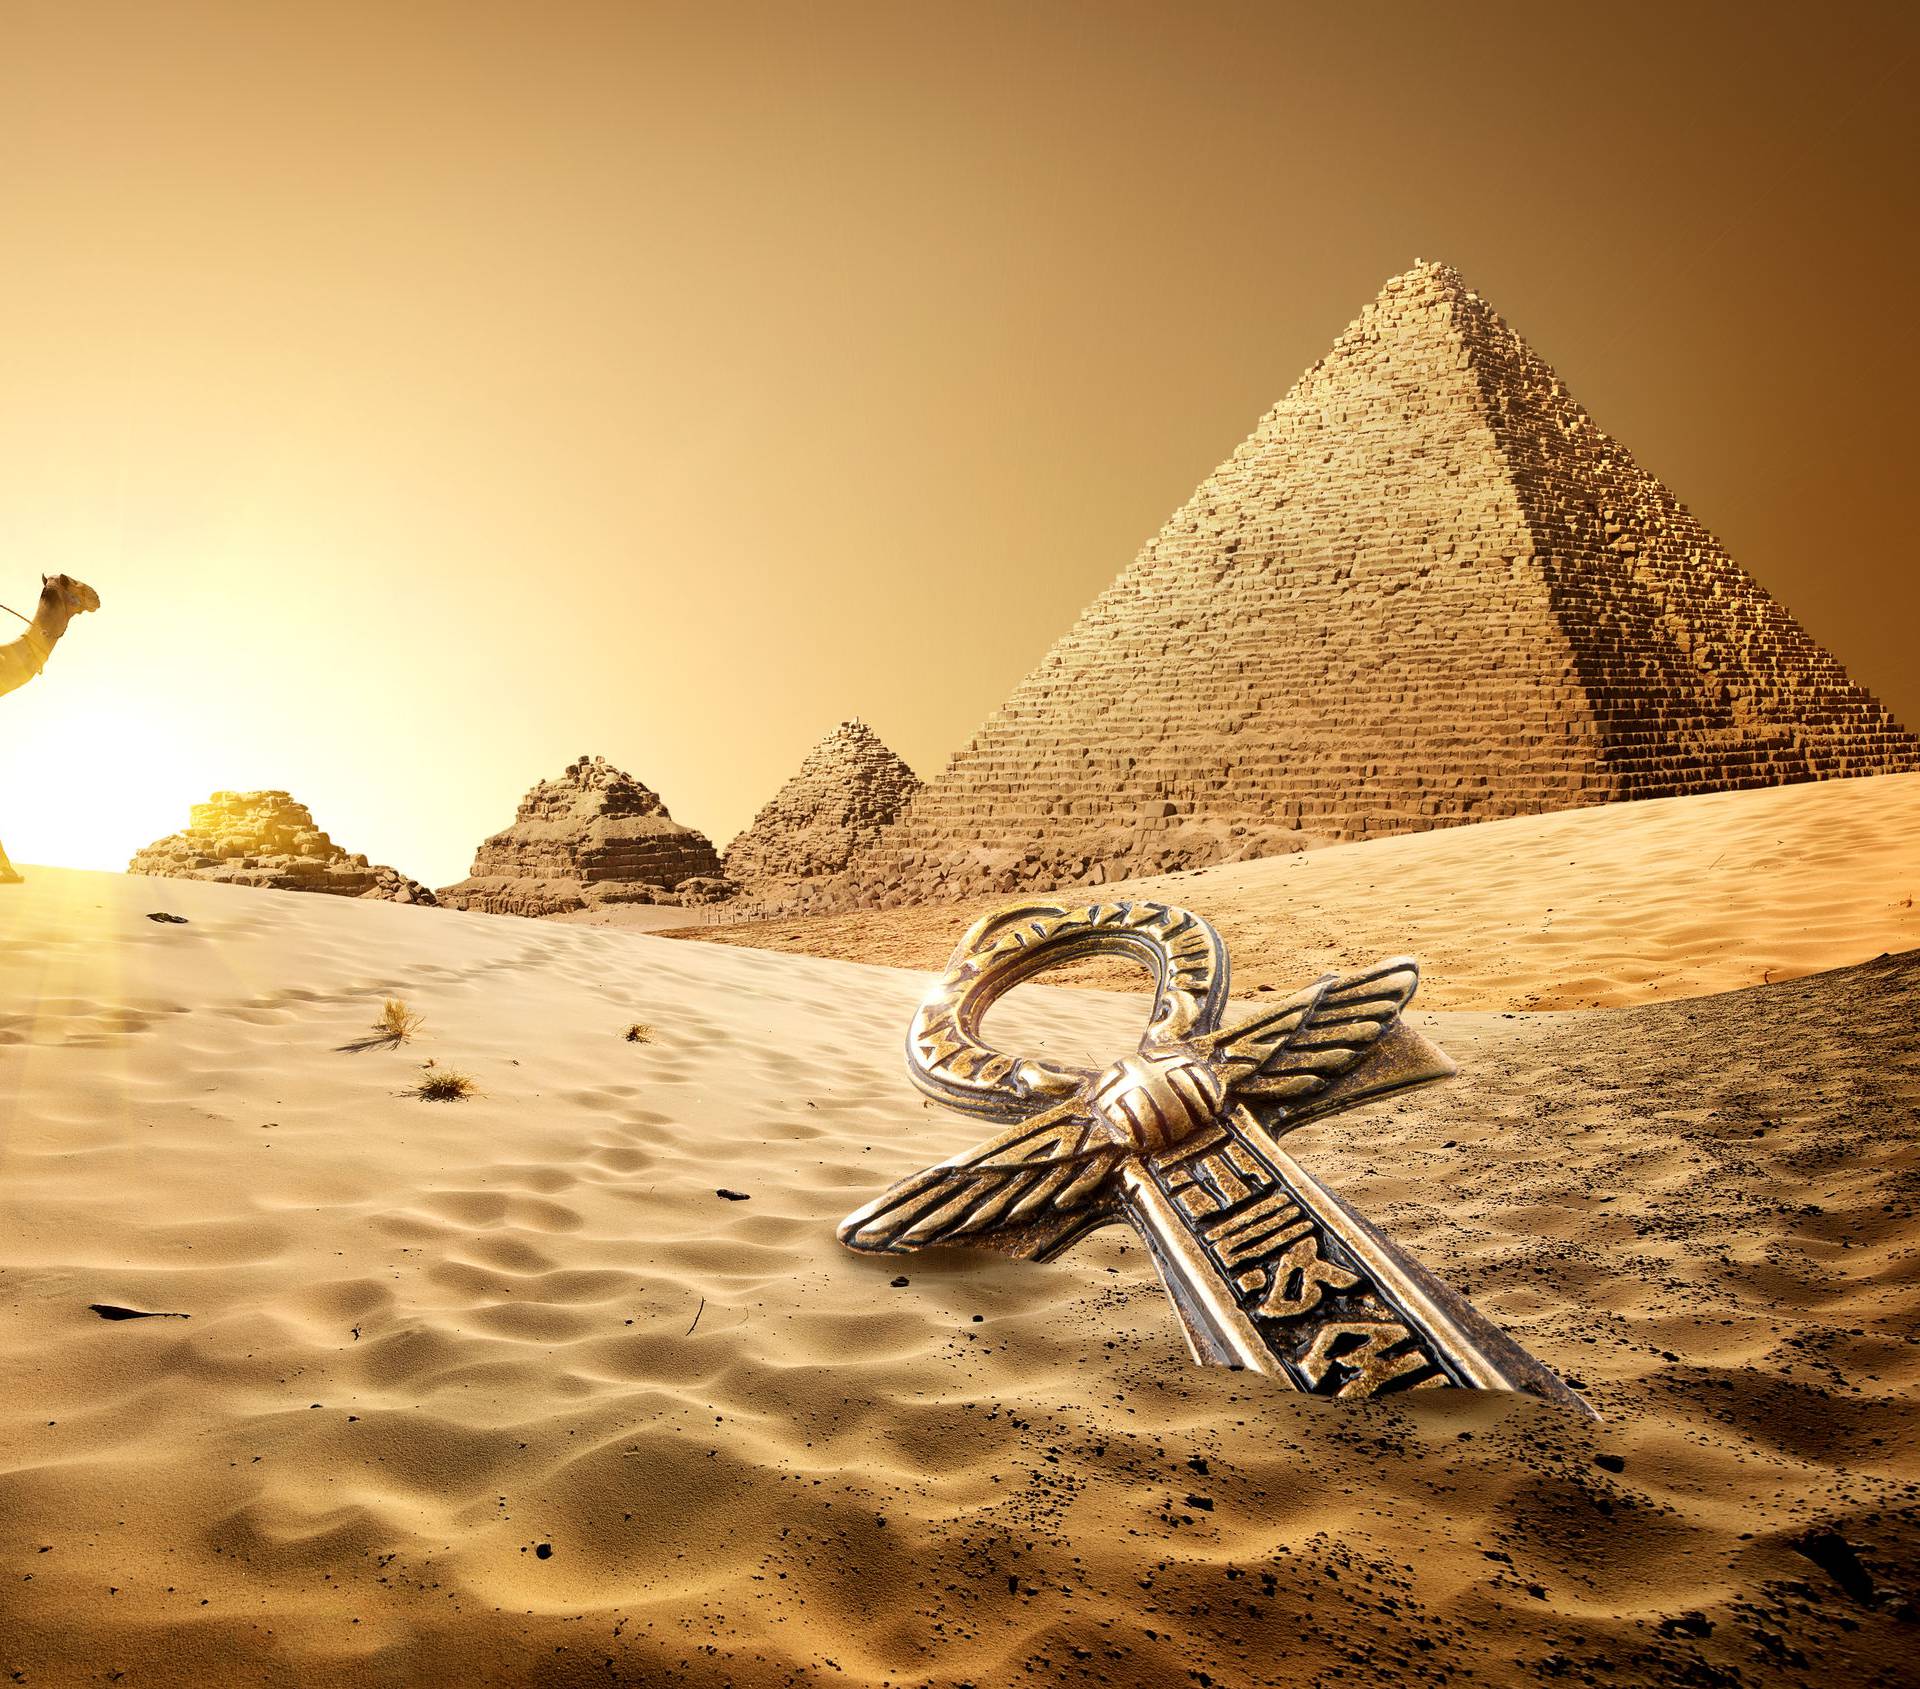 Drevno proricanje: Znate li što ste po egipatskom horoskopu?